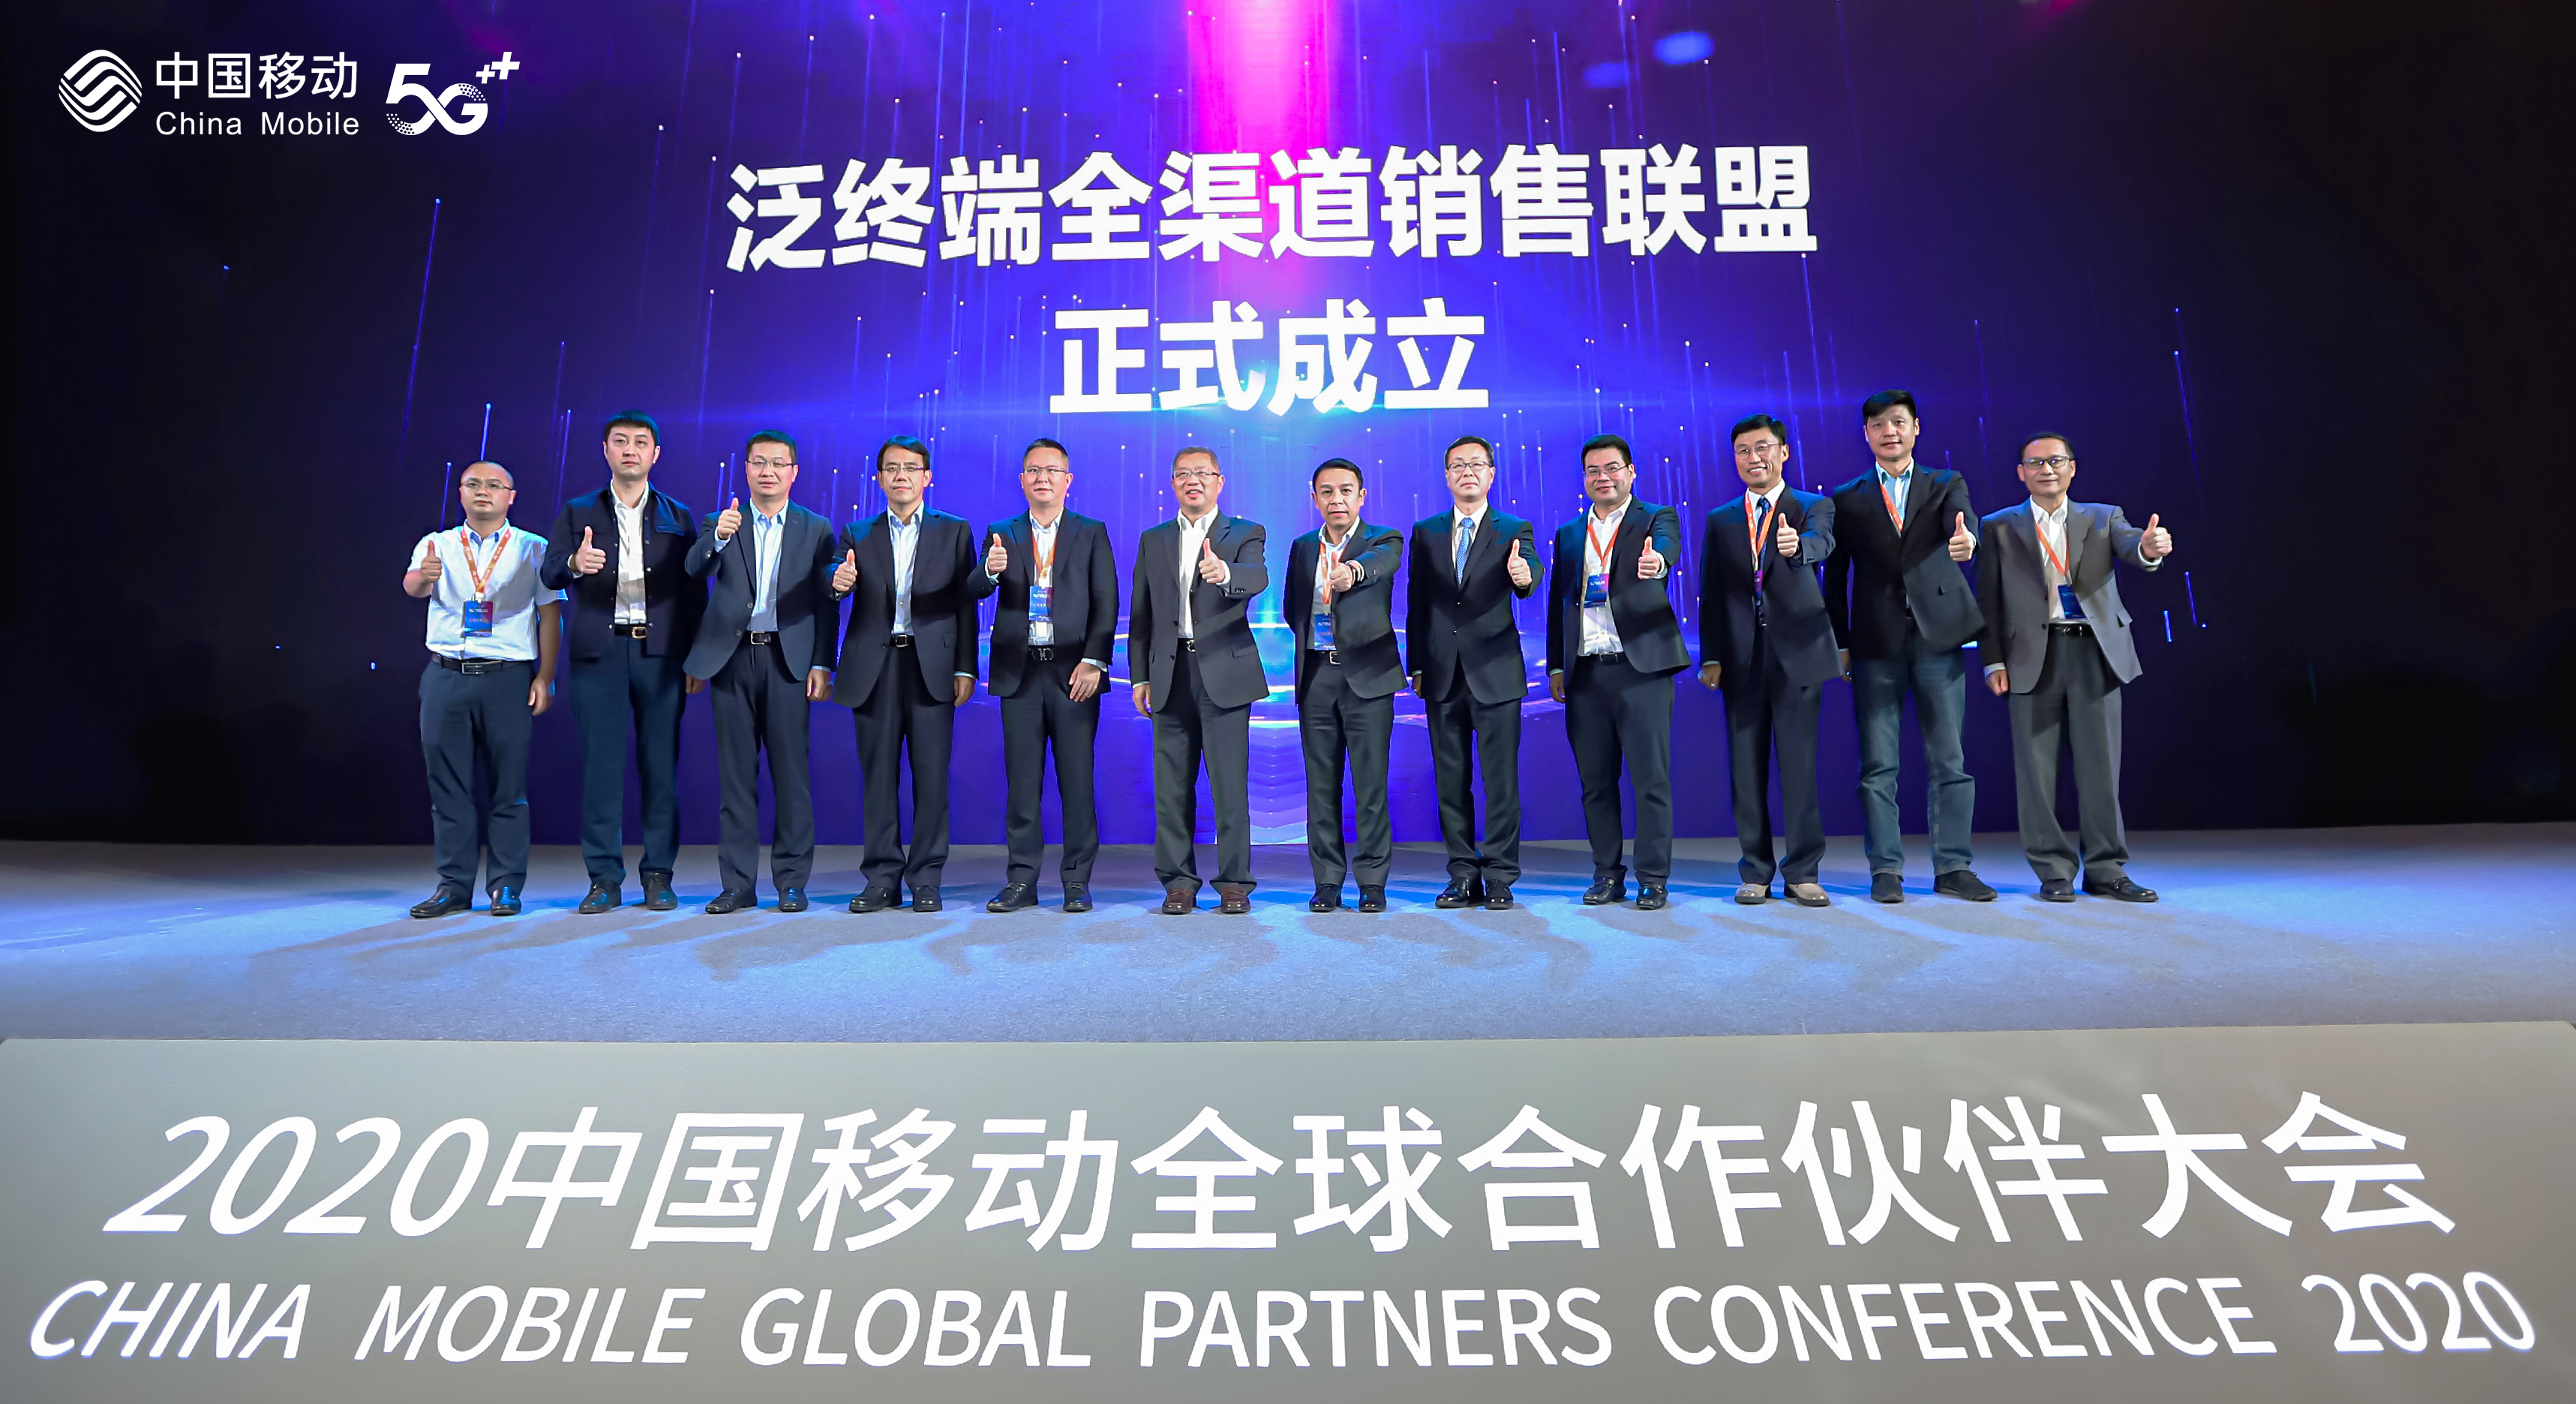 中国移动发布2021年5G终端产品暨销售策略